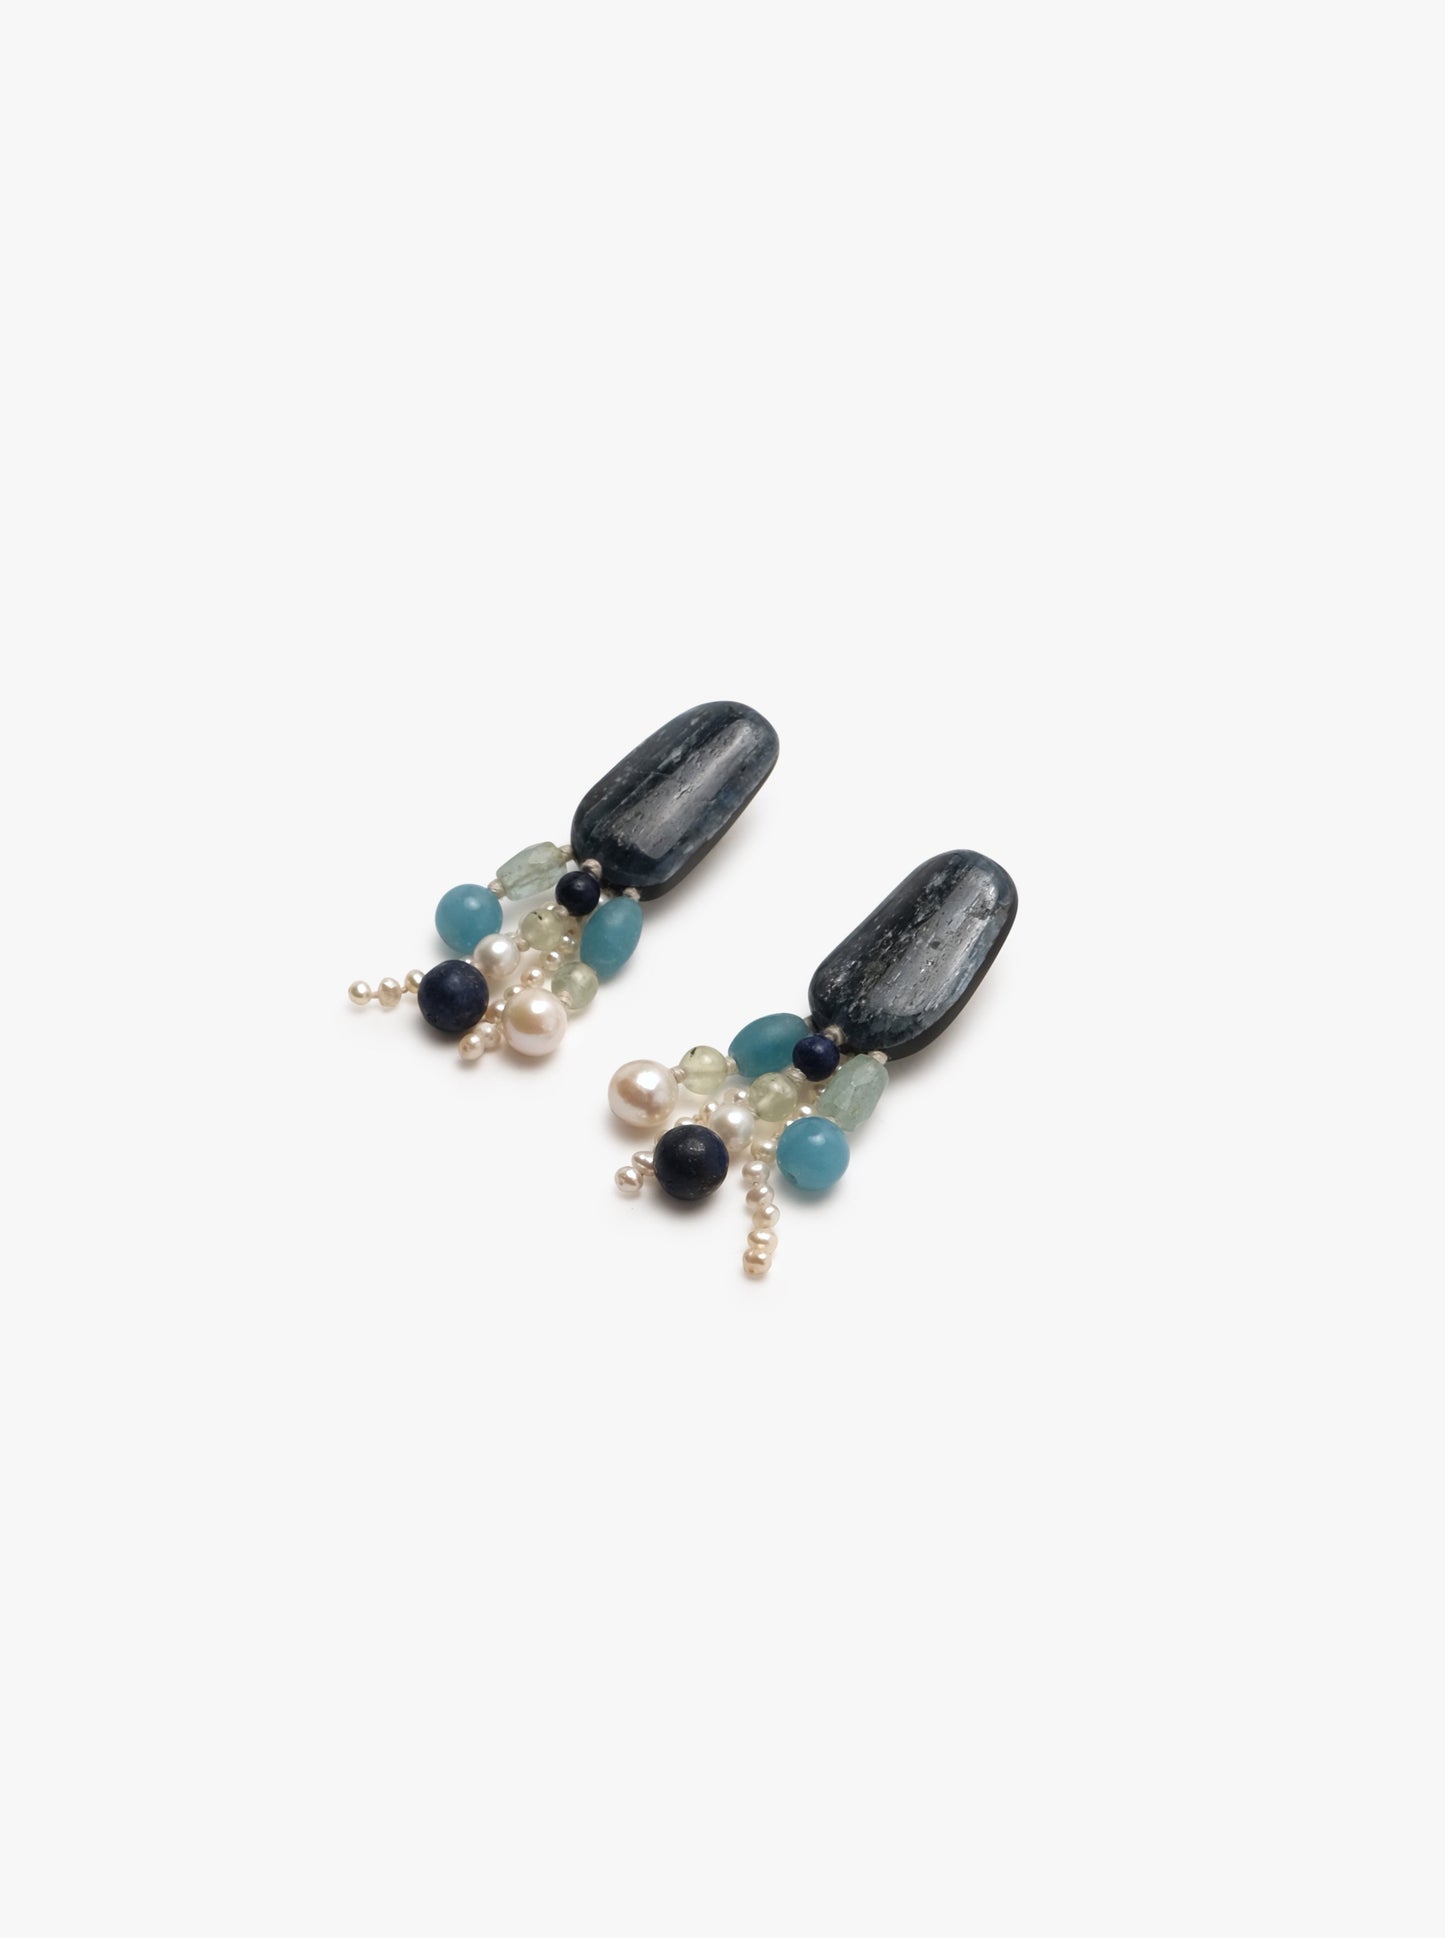 Stud earrings: kyanite, freshwater pearls, prehnite